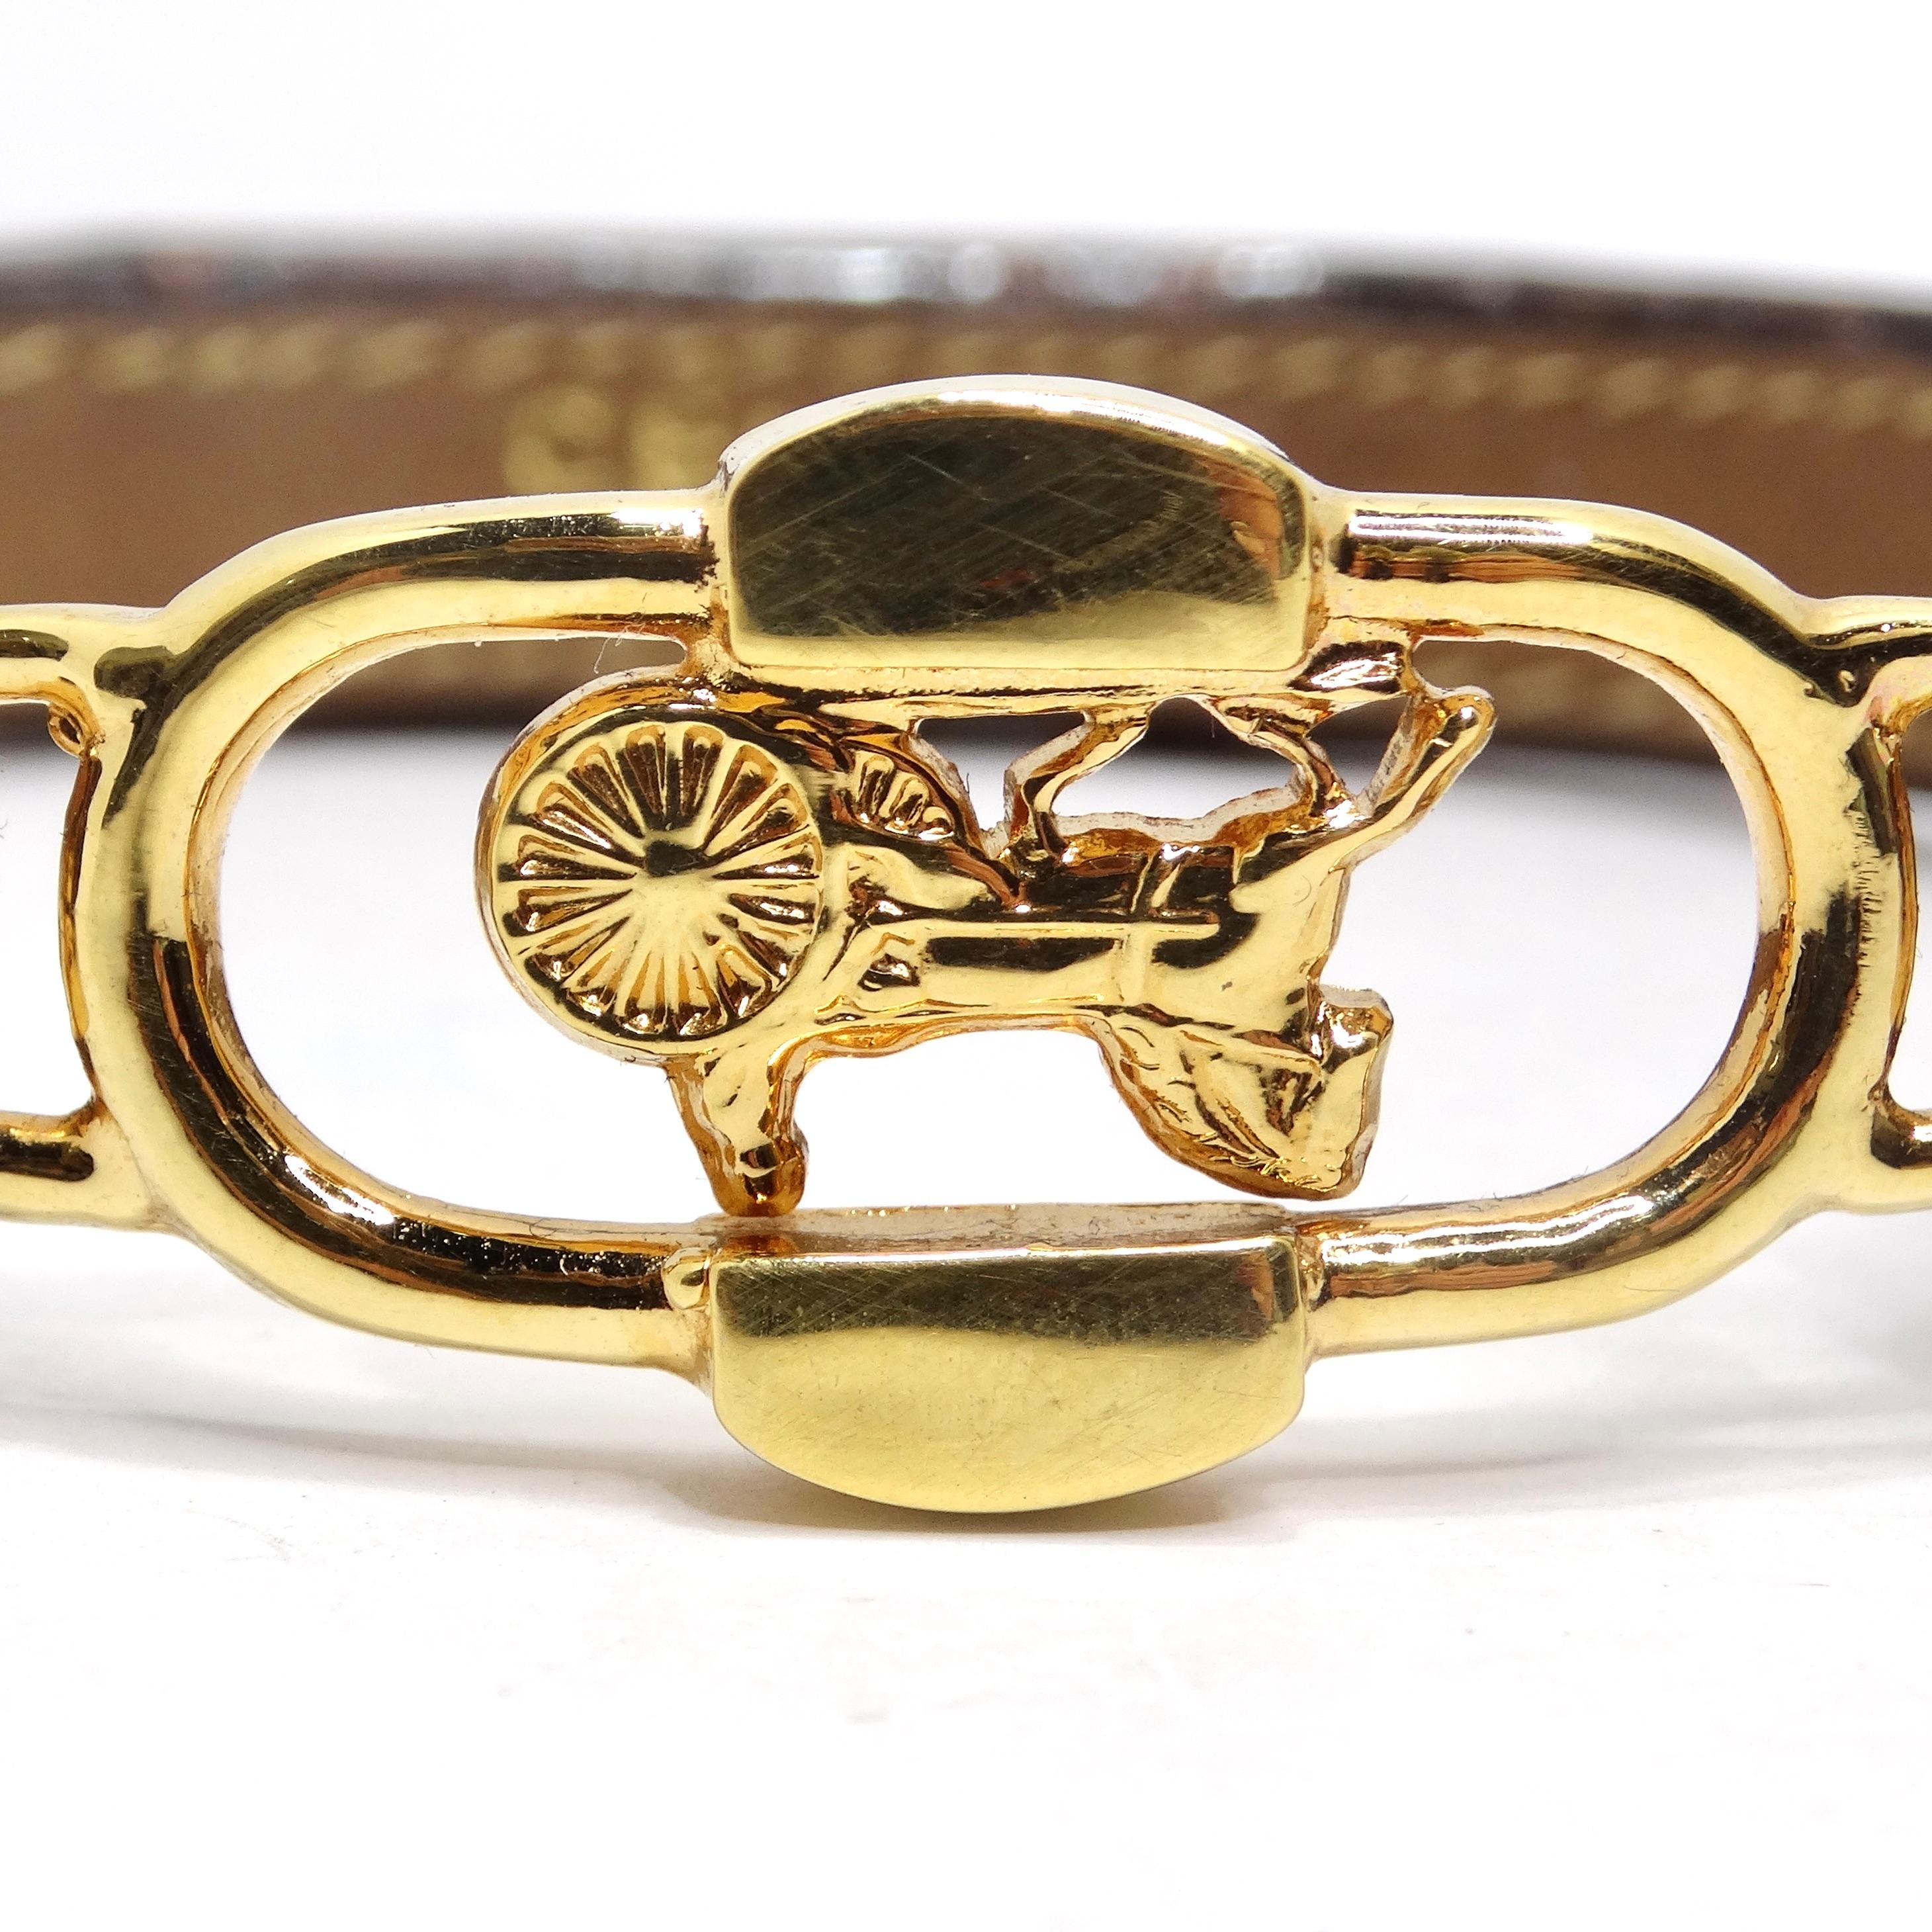 Gönnen Sie sich die Eleganz des Pferdesports mit dem Celine 1990s Gold Tone Horse Emblem Leather Bracelet. Dieses braune Lederarmband ist in der Mitte mit einem unverwechselbaren gelbgoldenen Pferdeemblem verziert. Es ist ein superschickes und